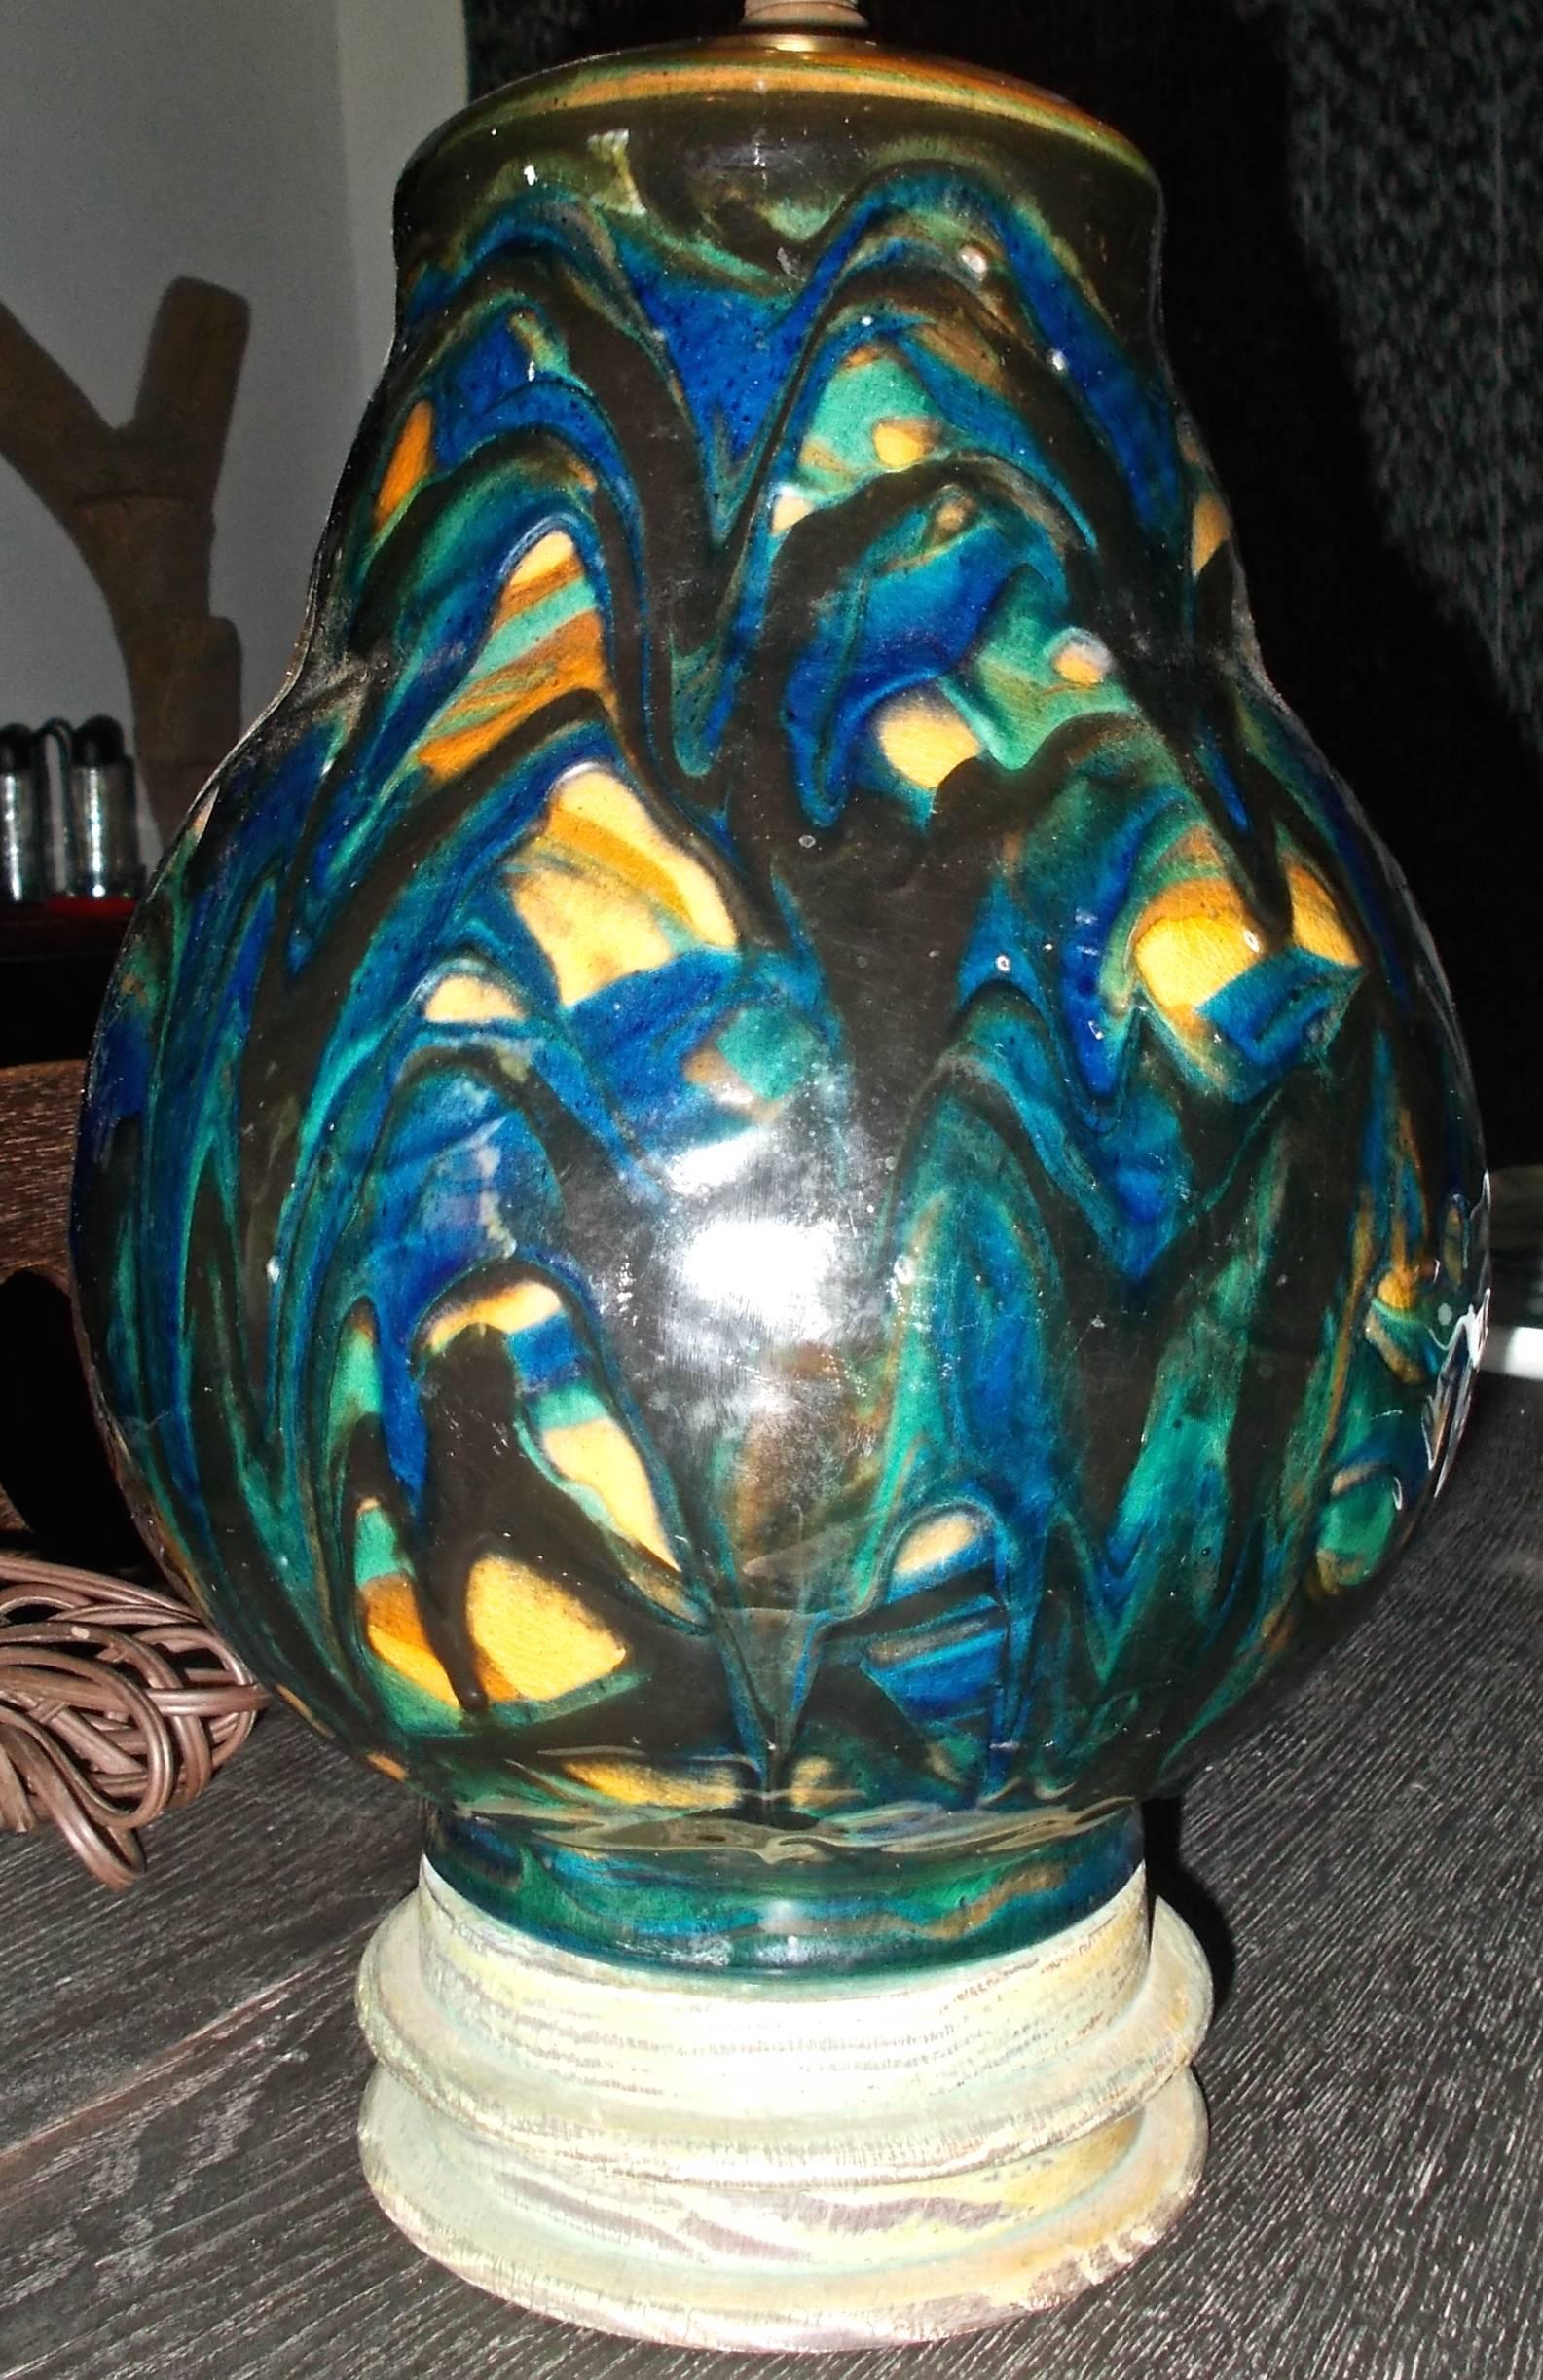 Magnifique base de lampe en céramique bleue, verte et noire, émaillée de façon très lâche, d'une hauteur de 12,5 pouces (la céramique elle-même fait 10 pouces). Intéressante base en bois avec des restes de peinture verte.